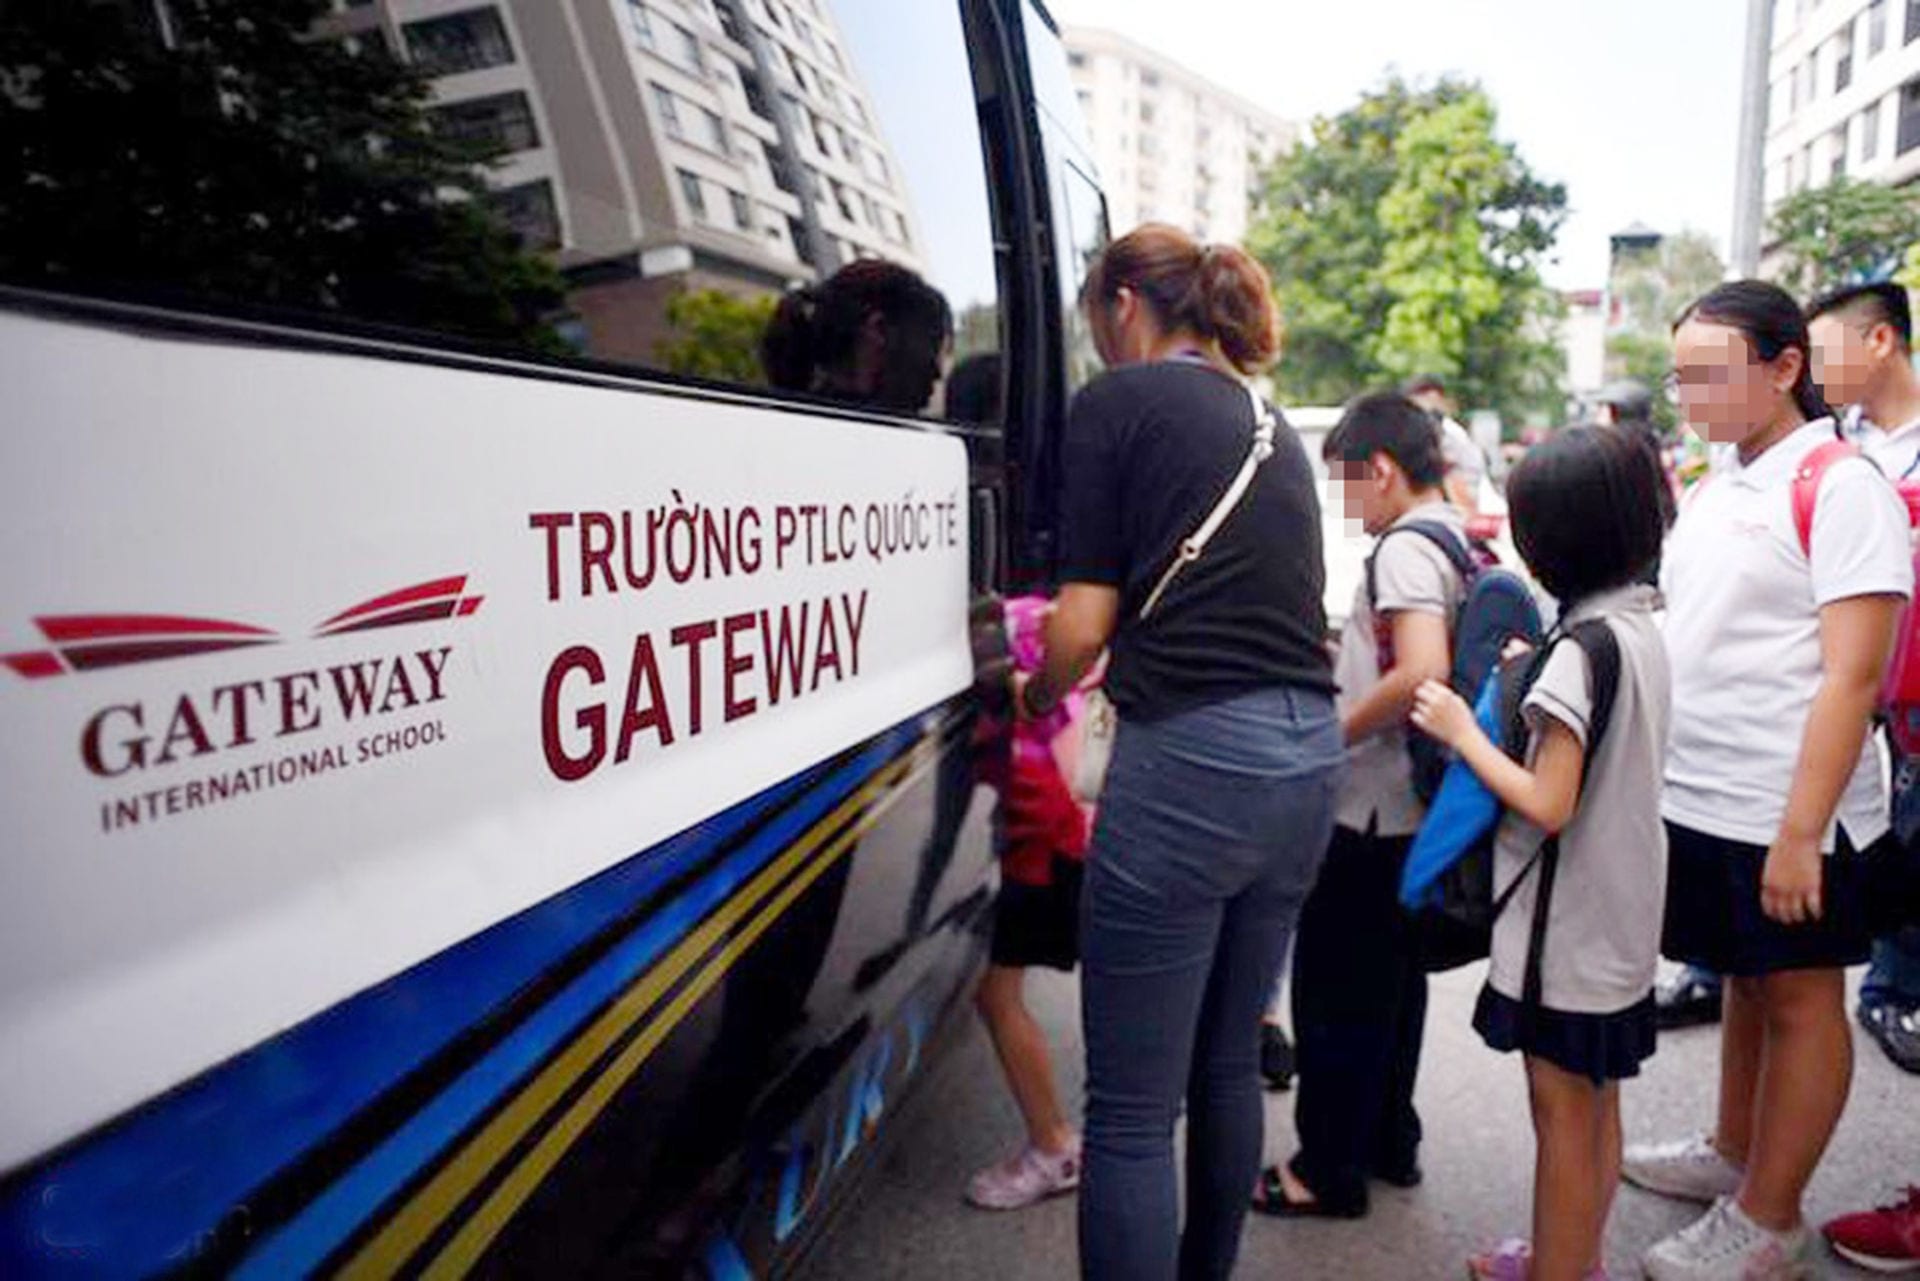 Vụ bé 6 tuổi trường Gateway chết trên xe: Nhiều uẩn khúc